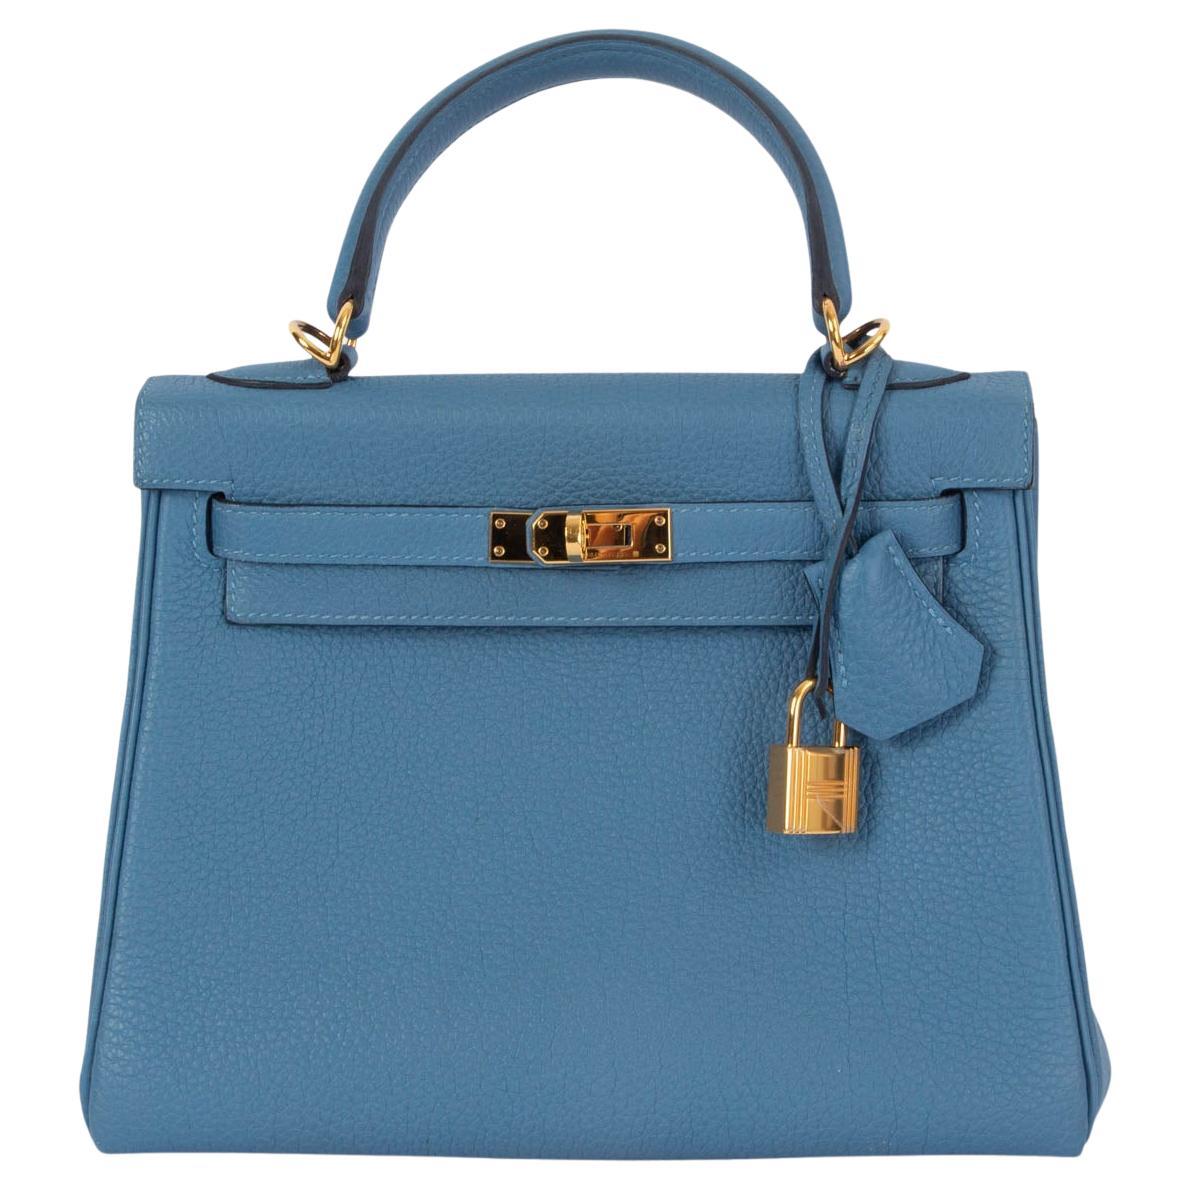 HERMES Azur blue Togo leather KELLY 25 RETOURNE Bag w Gold